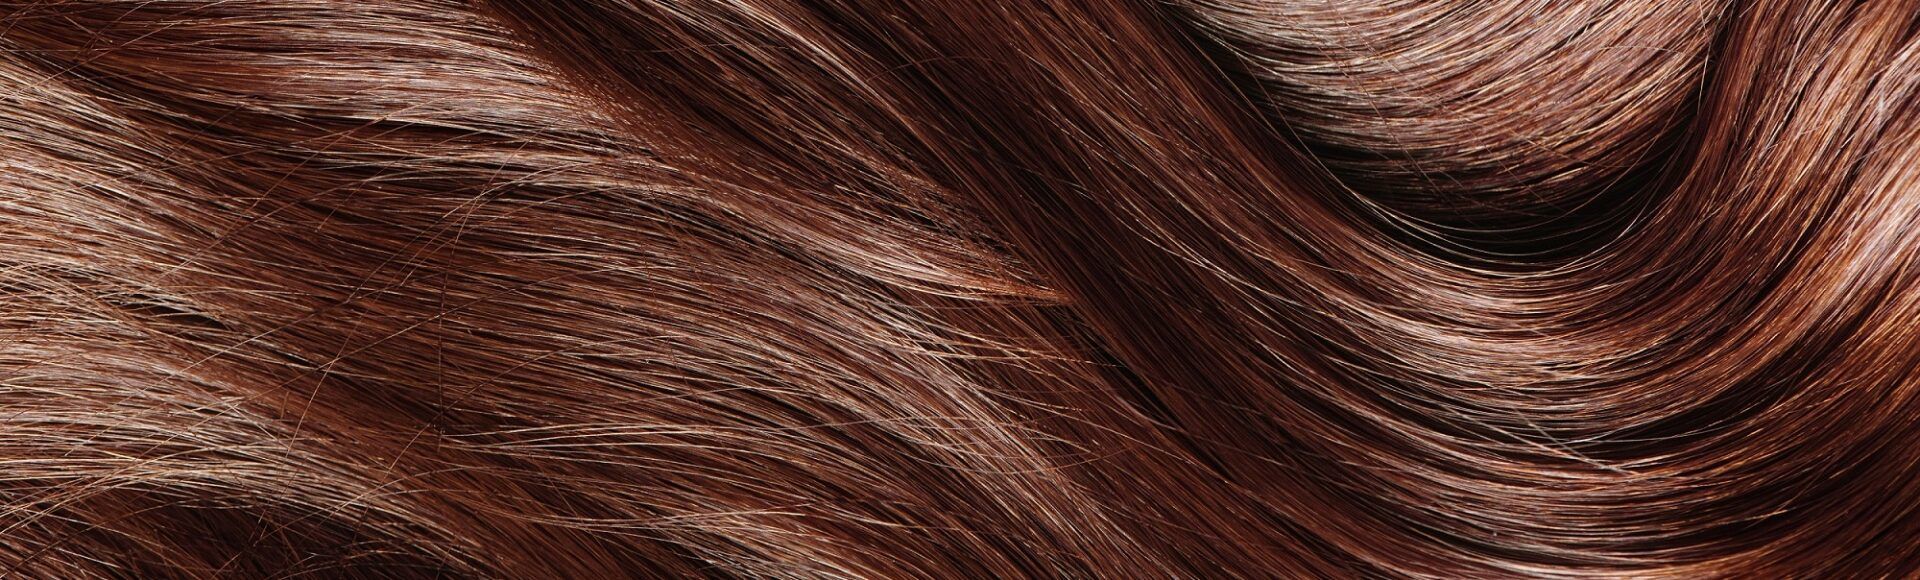 Textura cabello castano rojizo